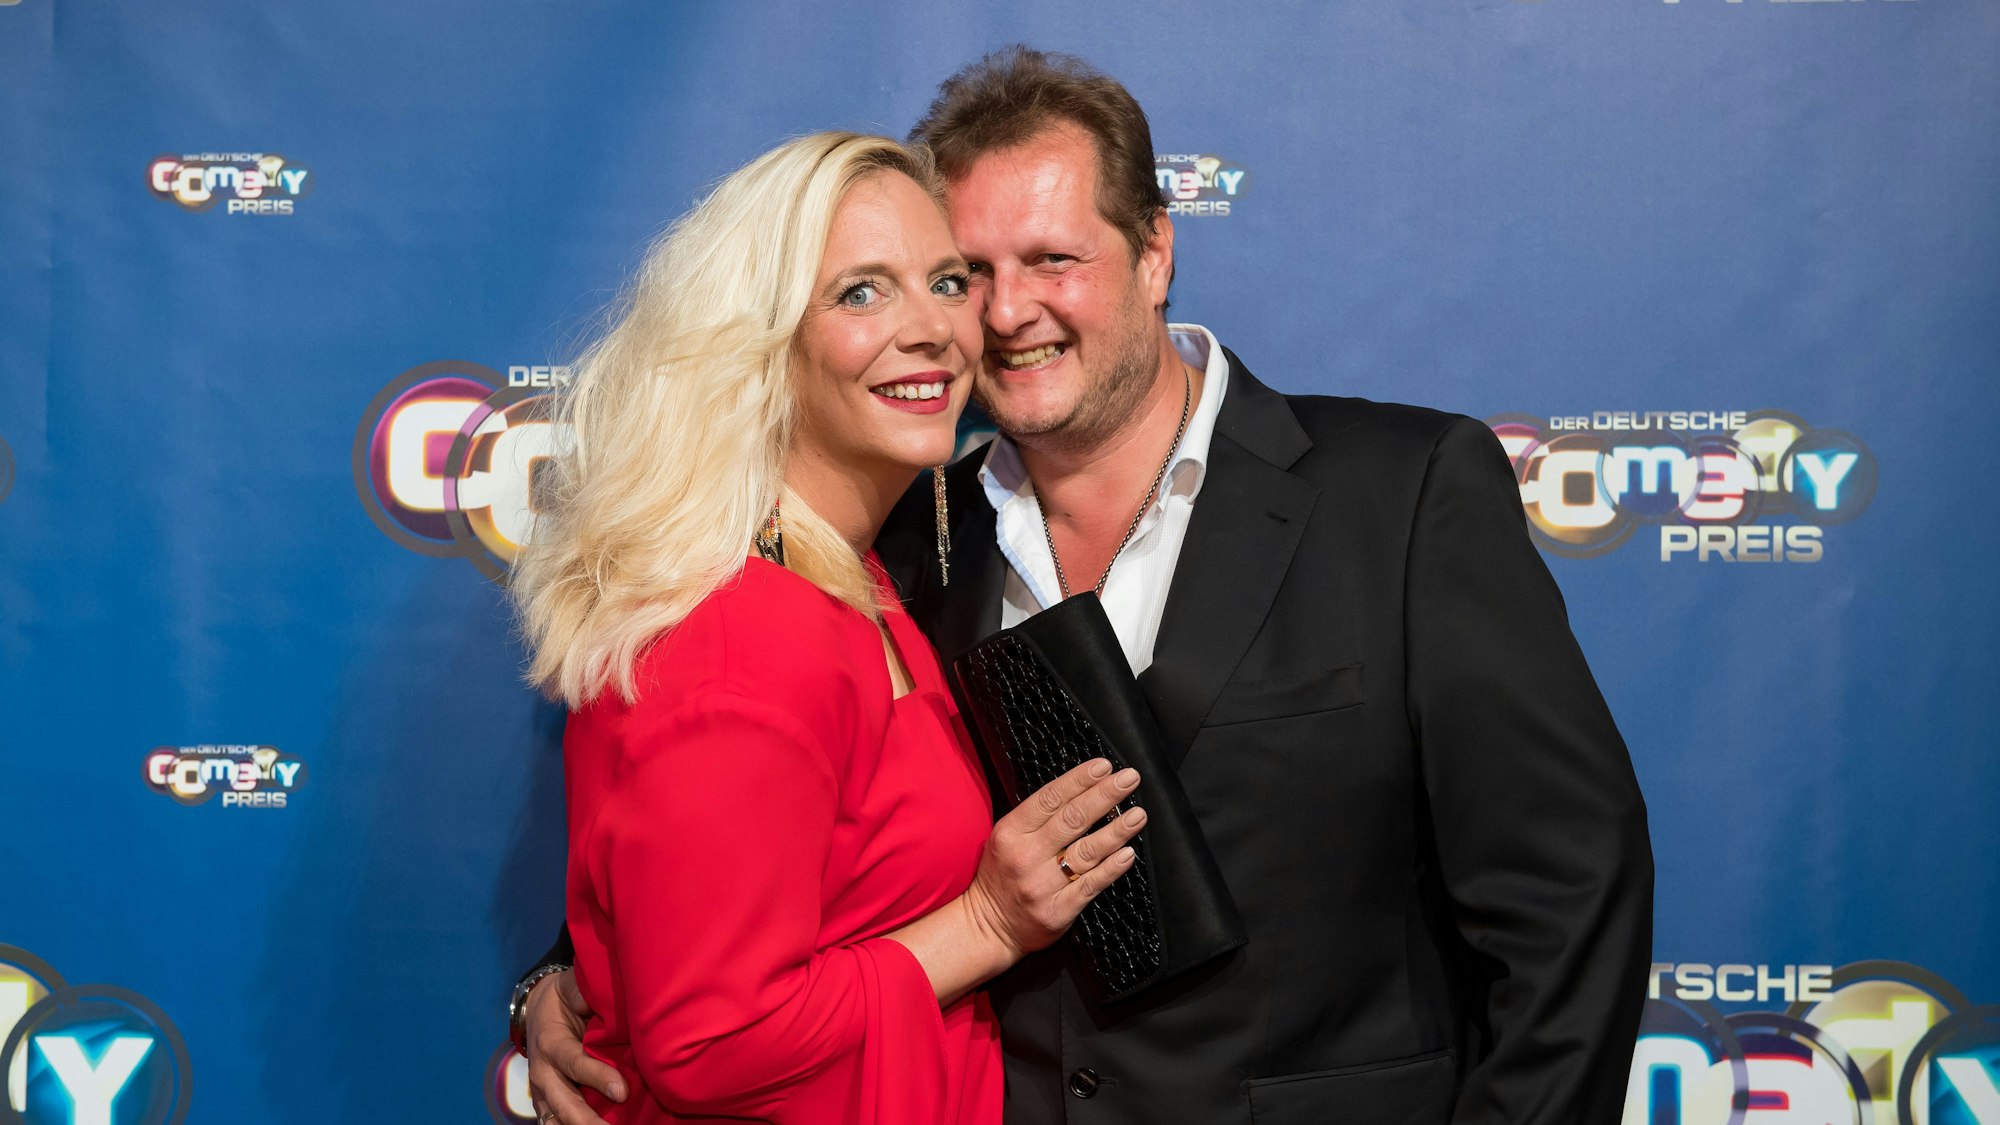 Der Kult-Auswanderer Jens Büchner (r) kommt mit seiner Frau Daniela zur Verleihung des "Deutsche Comedy Preises 2017".